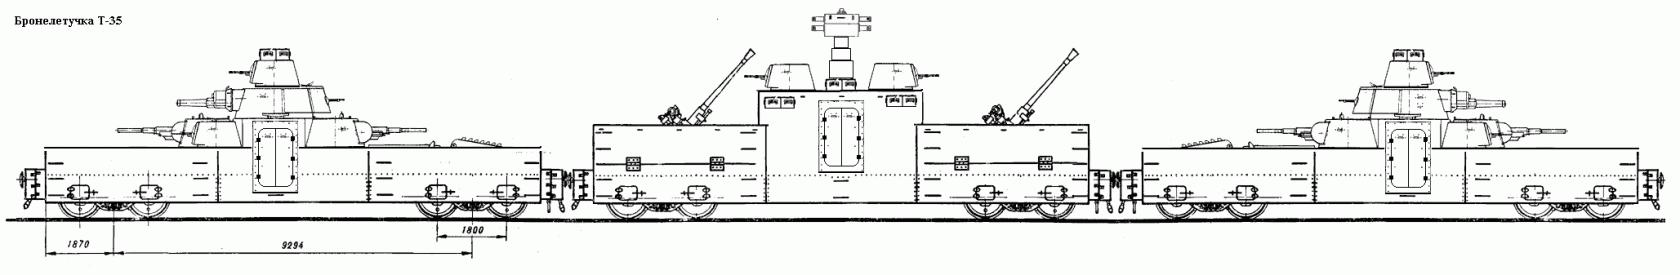 Бронелетучки Т-28 и Т-35. Проект переделки танков Т-28 и Т-35 в бронелетучки.